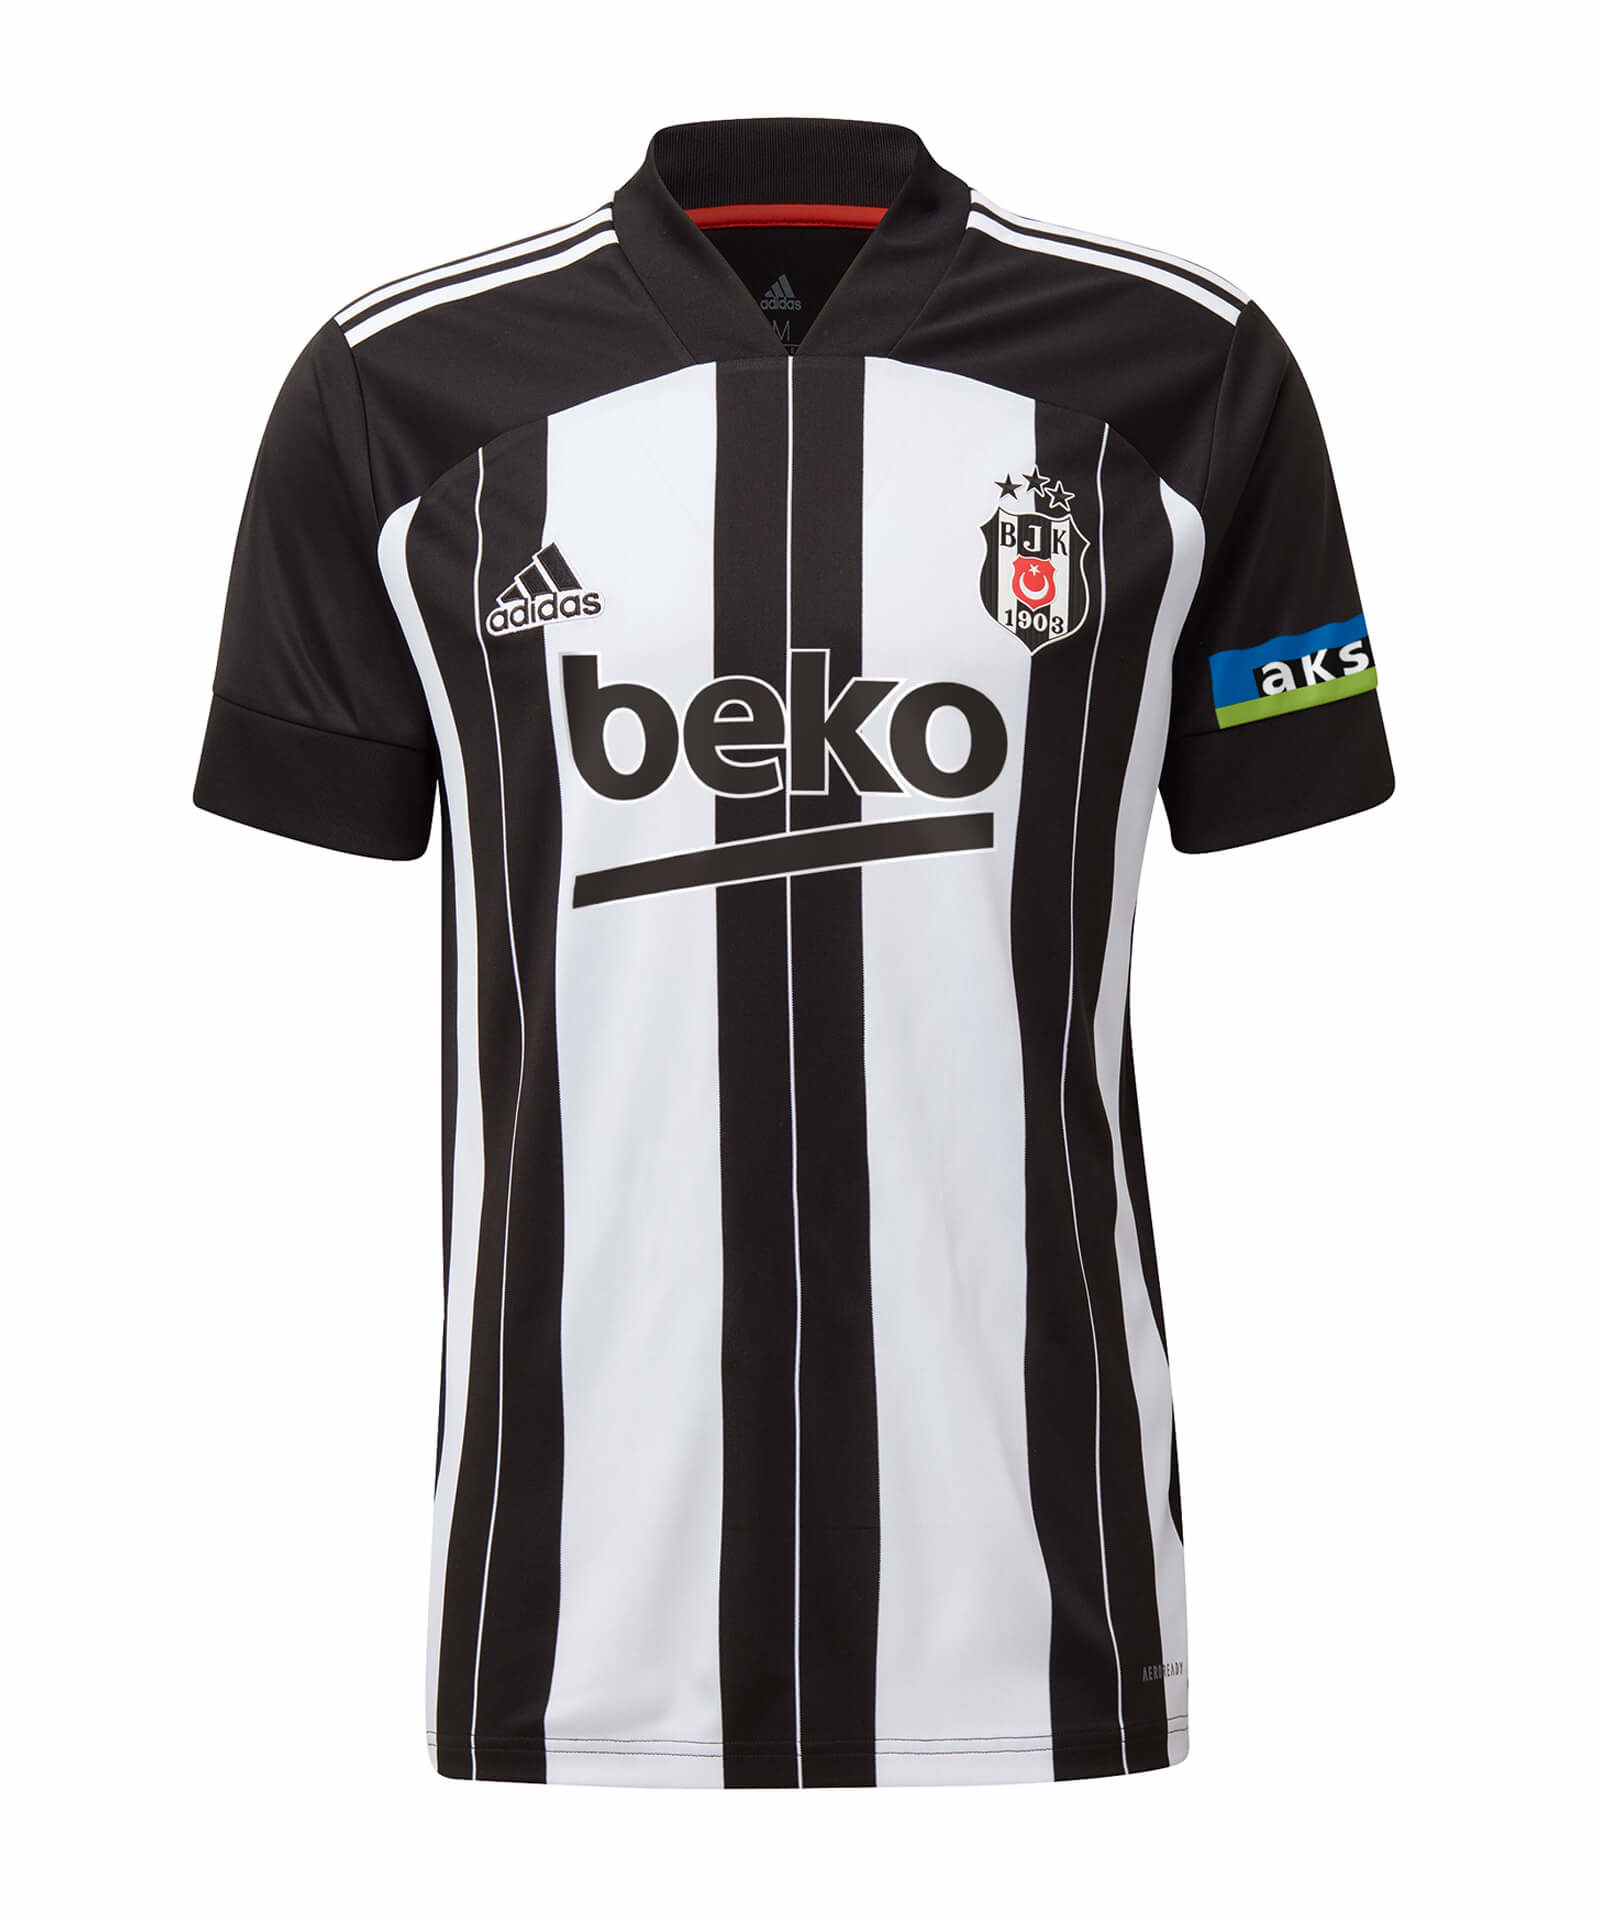 Besiktas - Besiktas Istanbul Onefootball